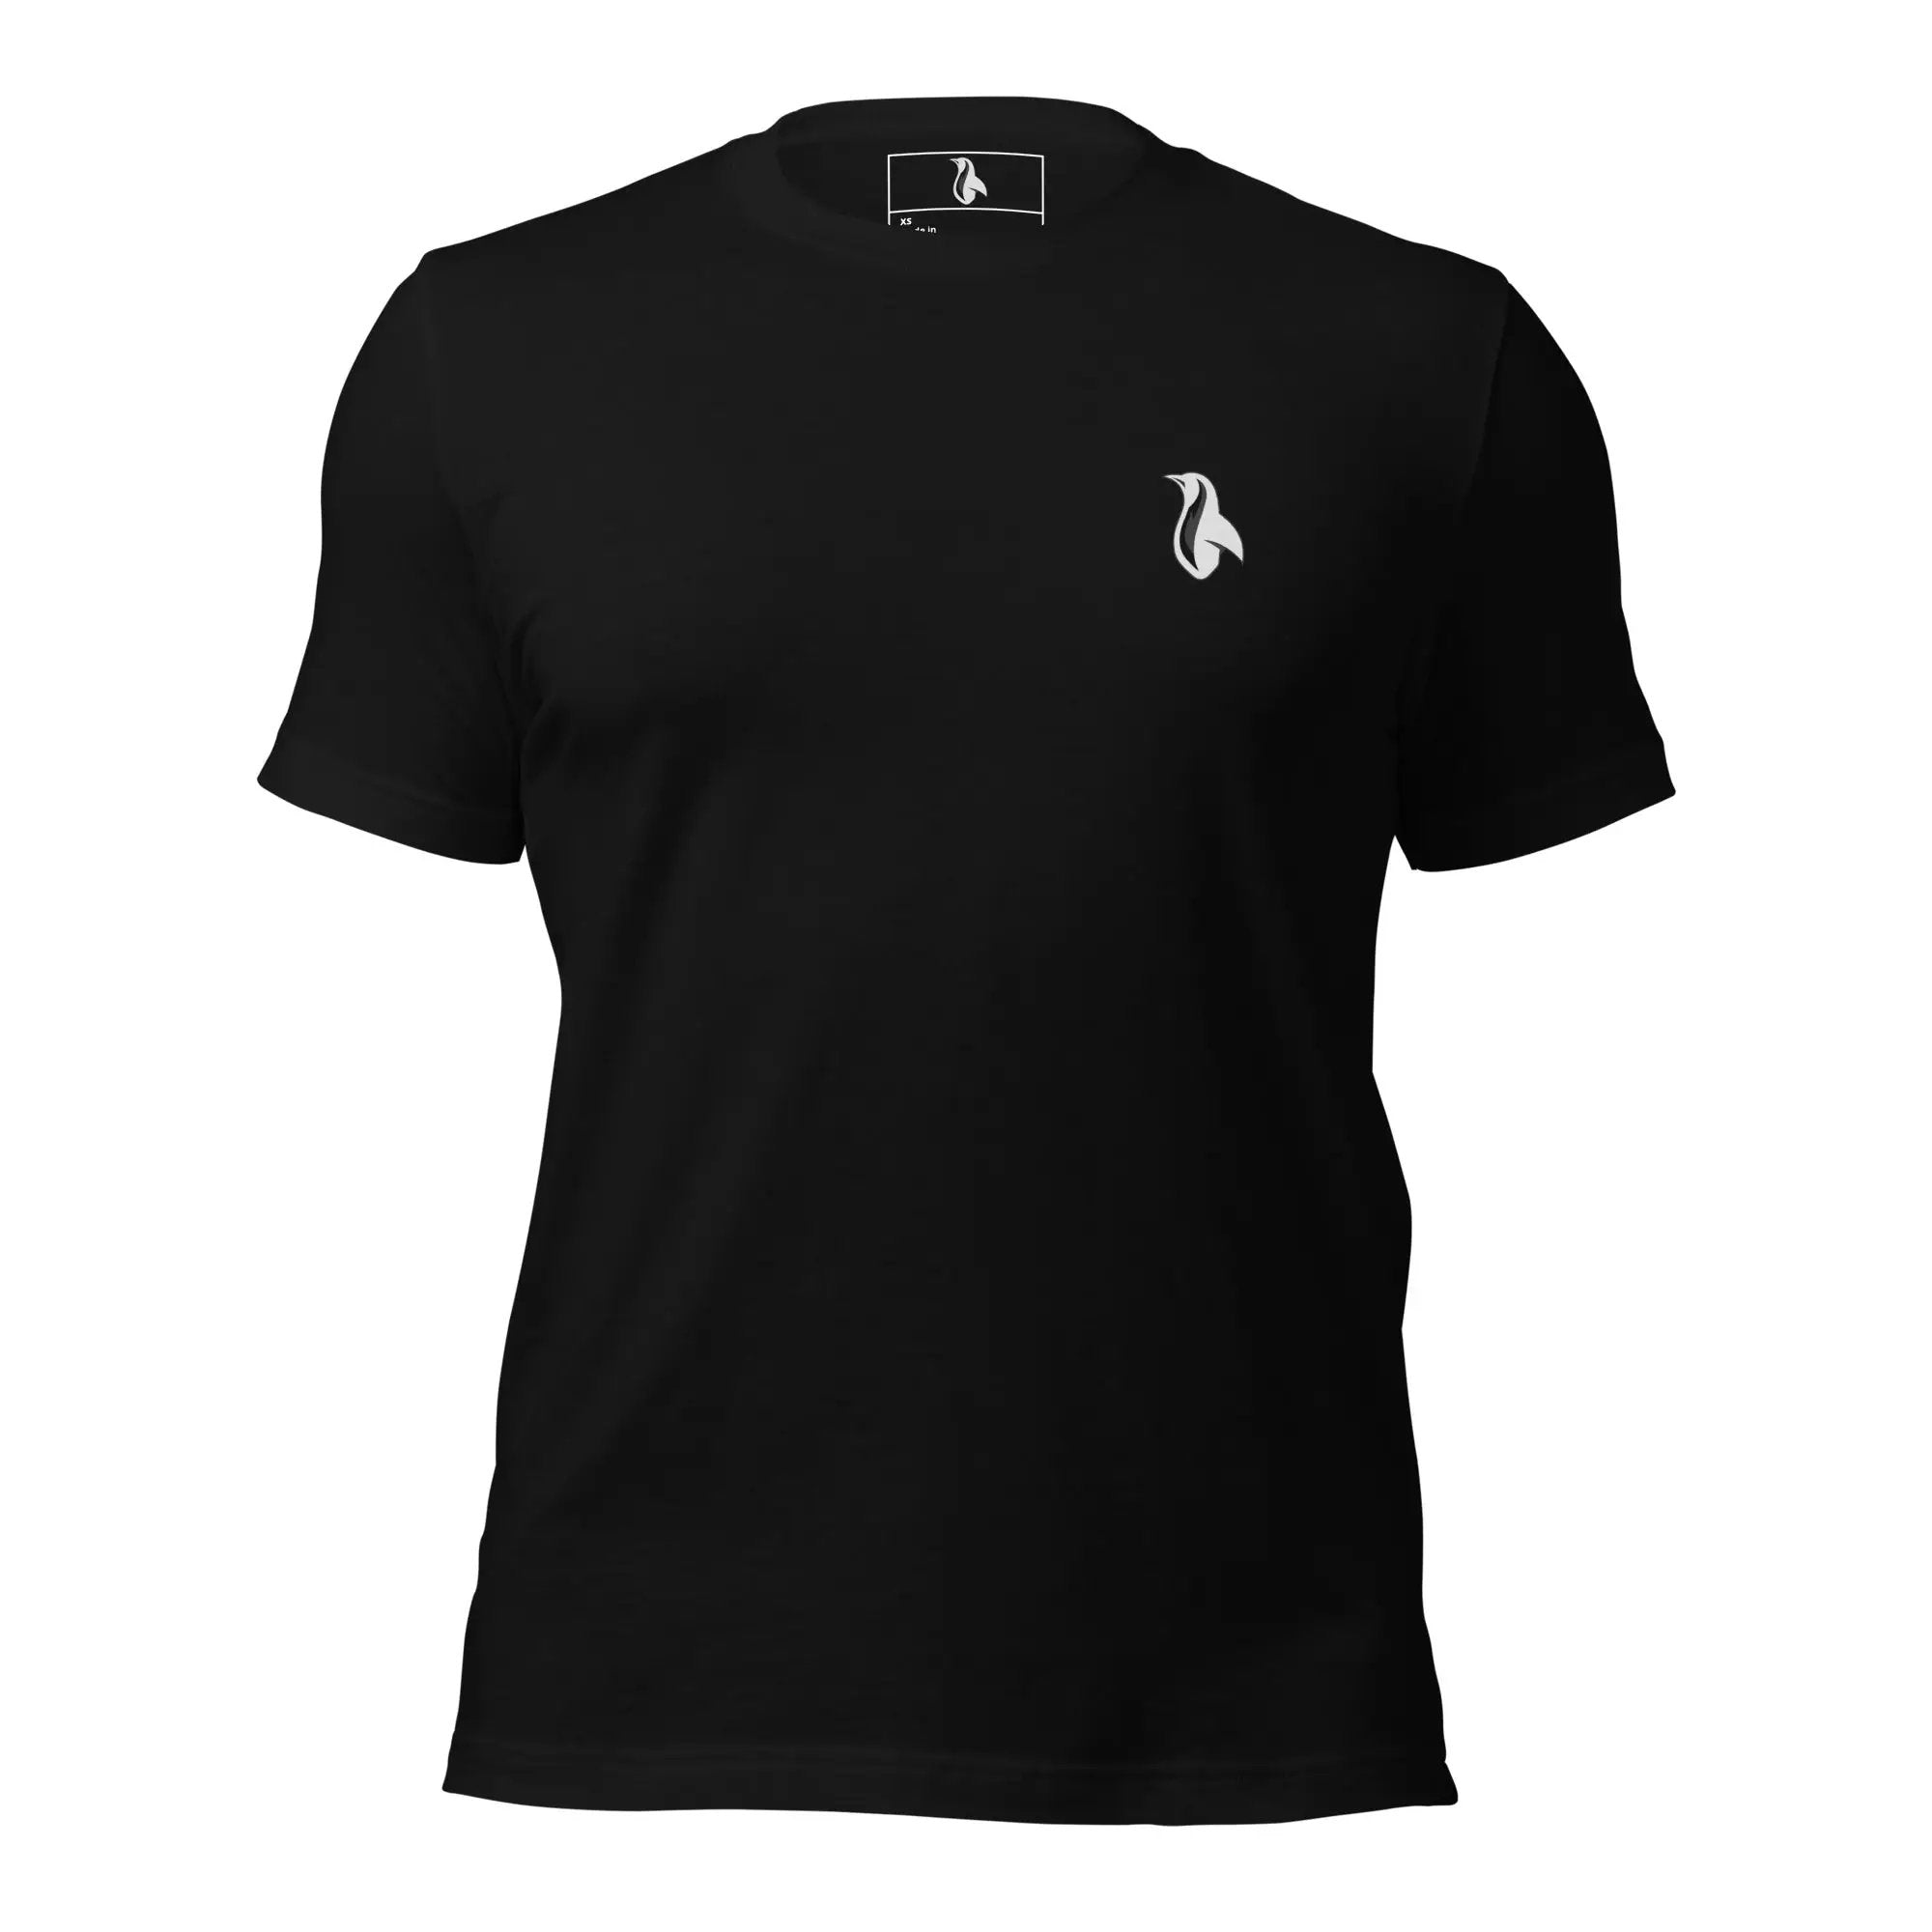 Maul Unisex t-shirt (Back)